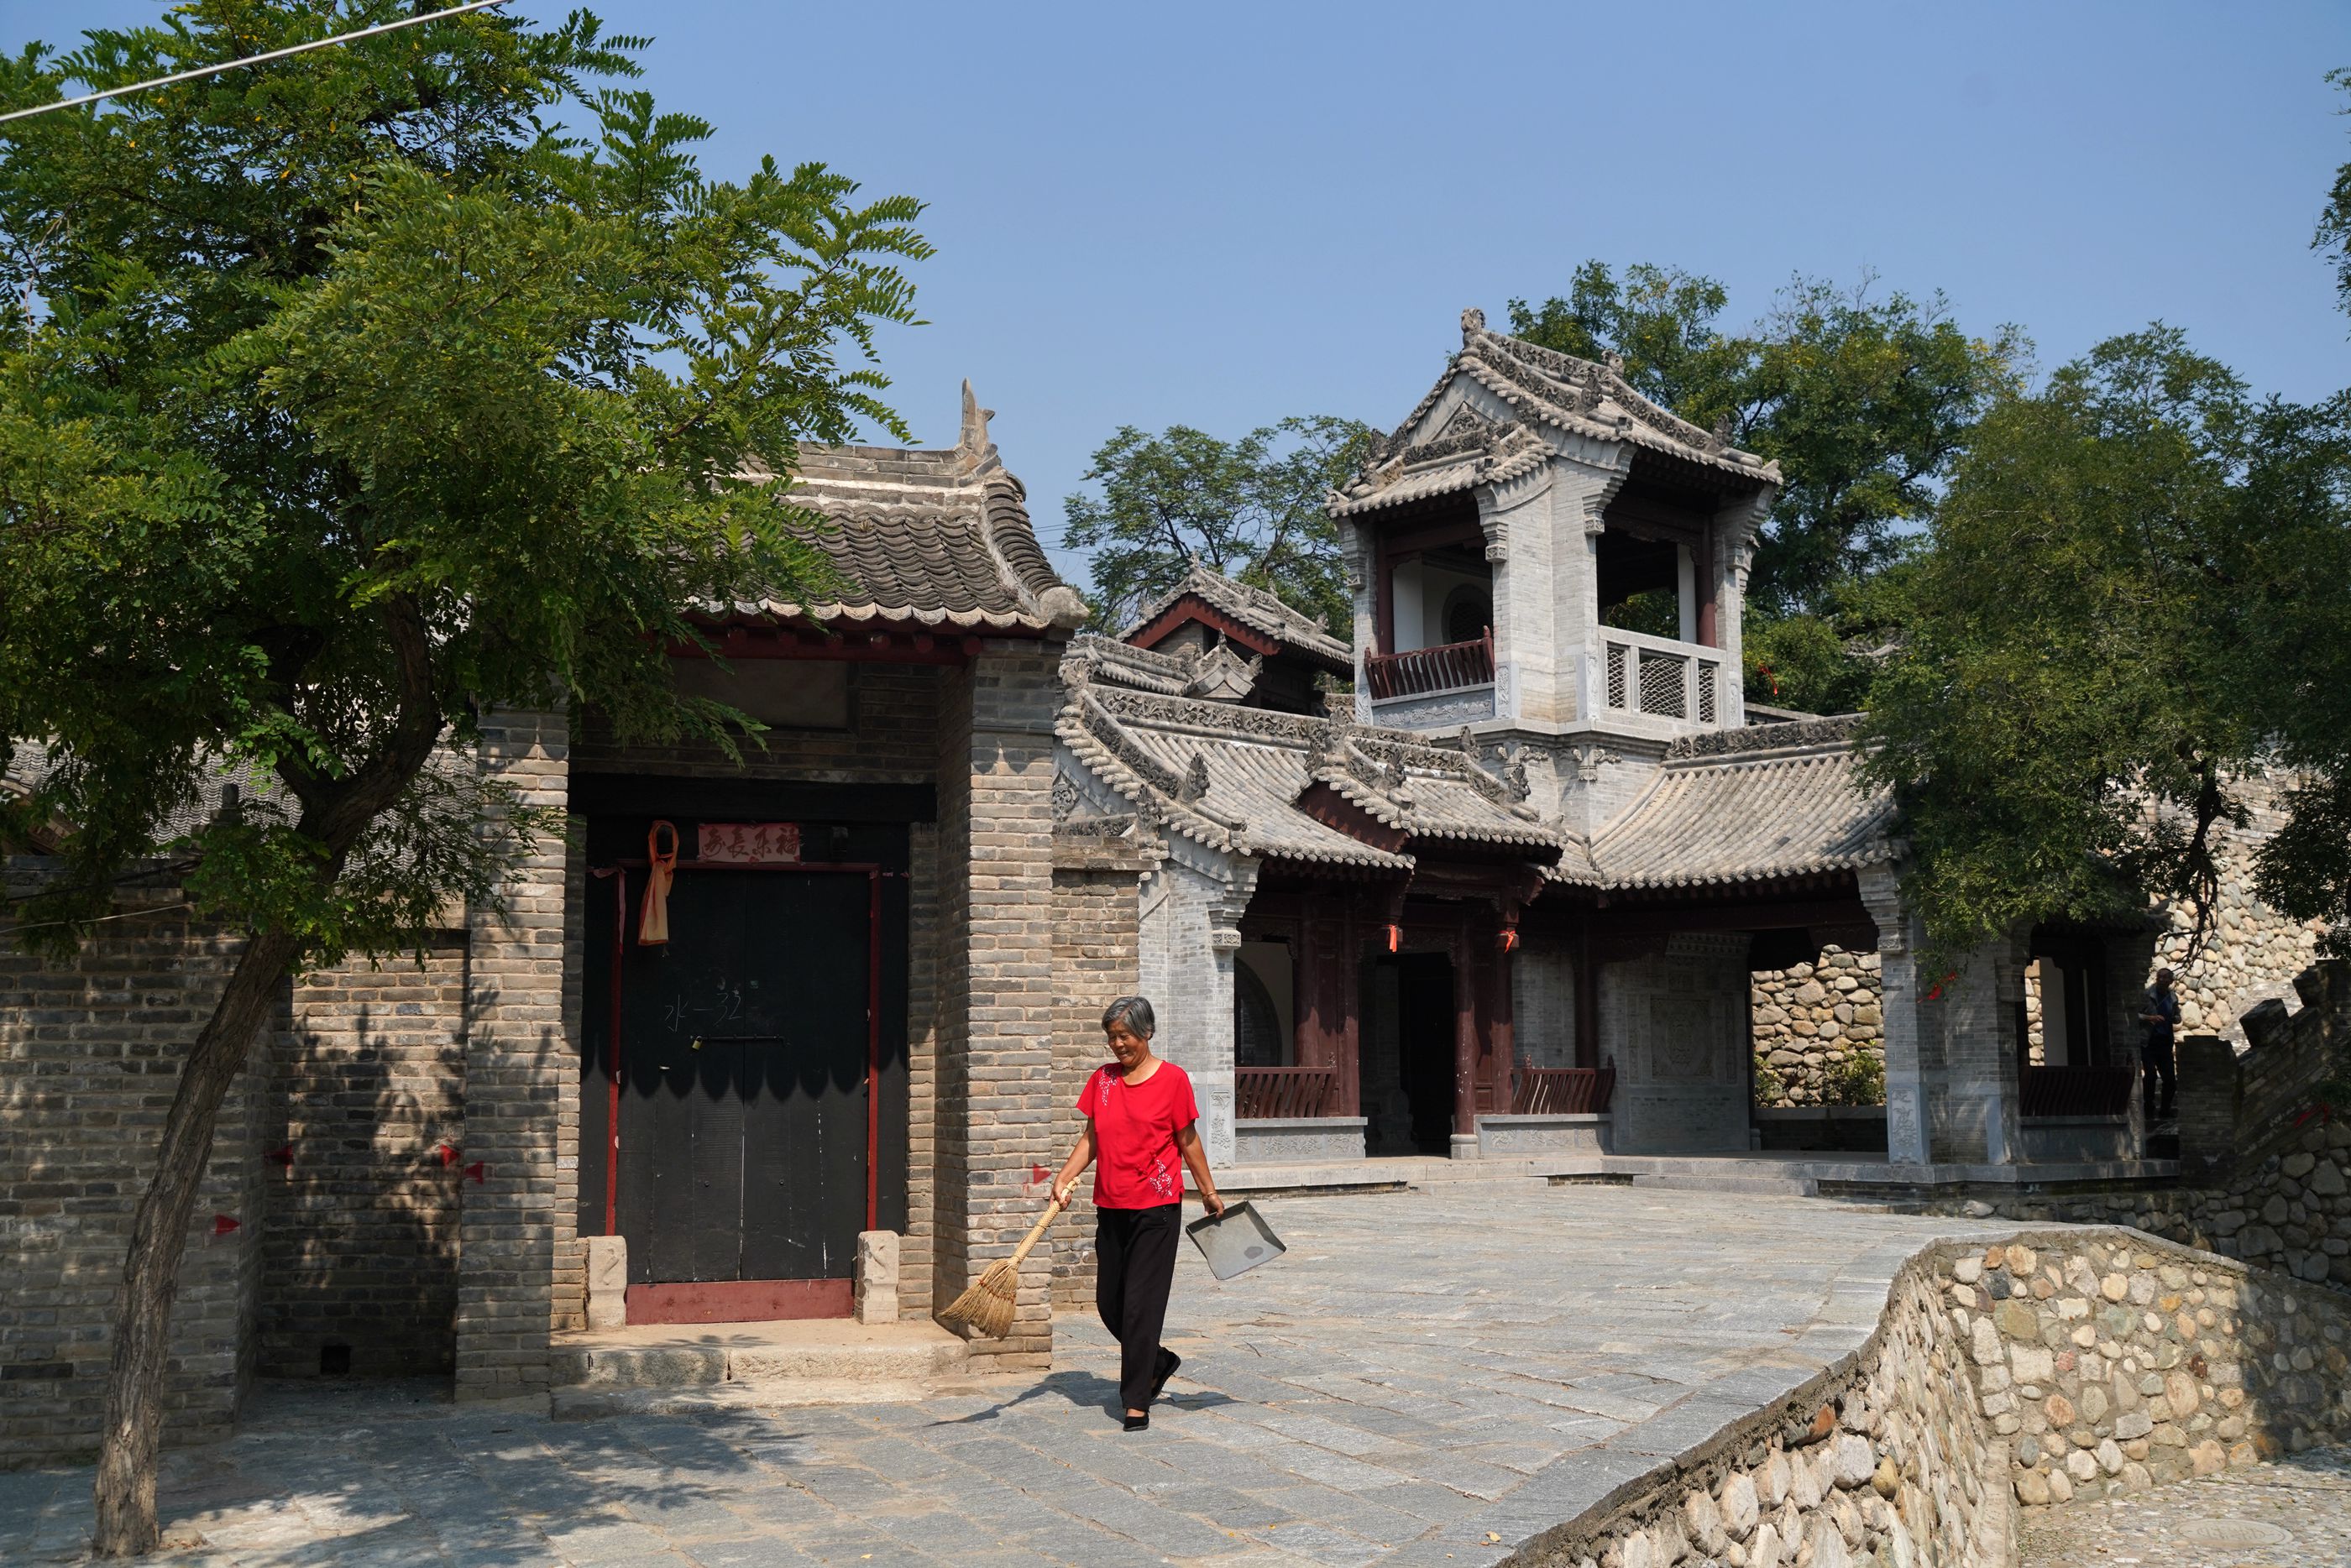 水坡古巷南侧的复古建筑陕西省潼关古城,是我国古代著名关隘之一,它